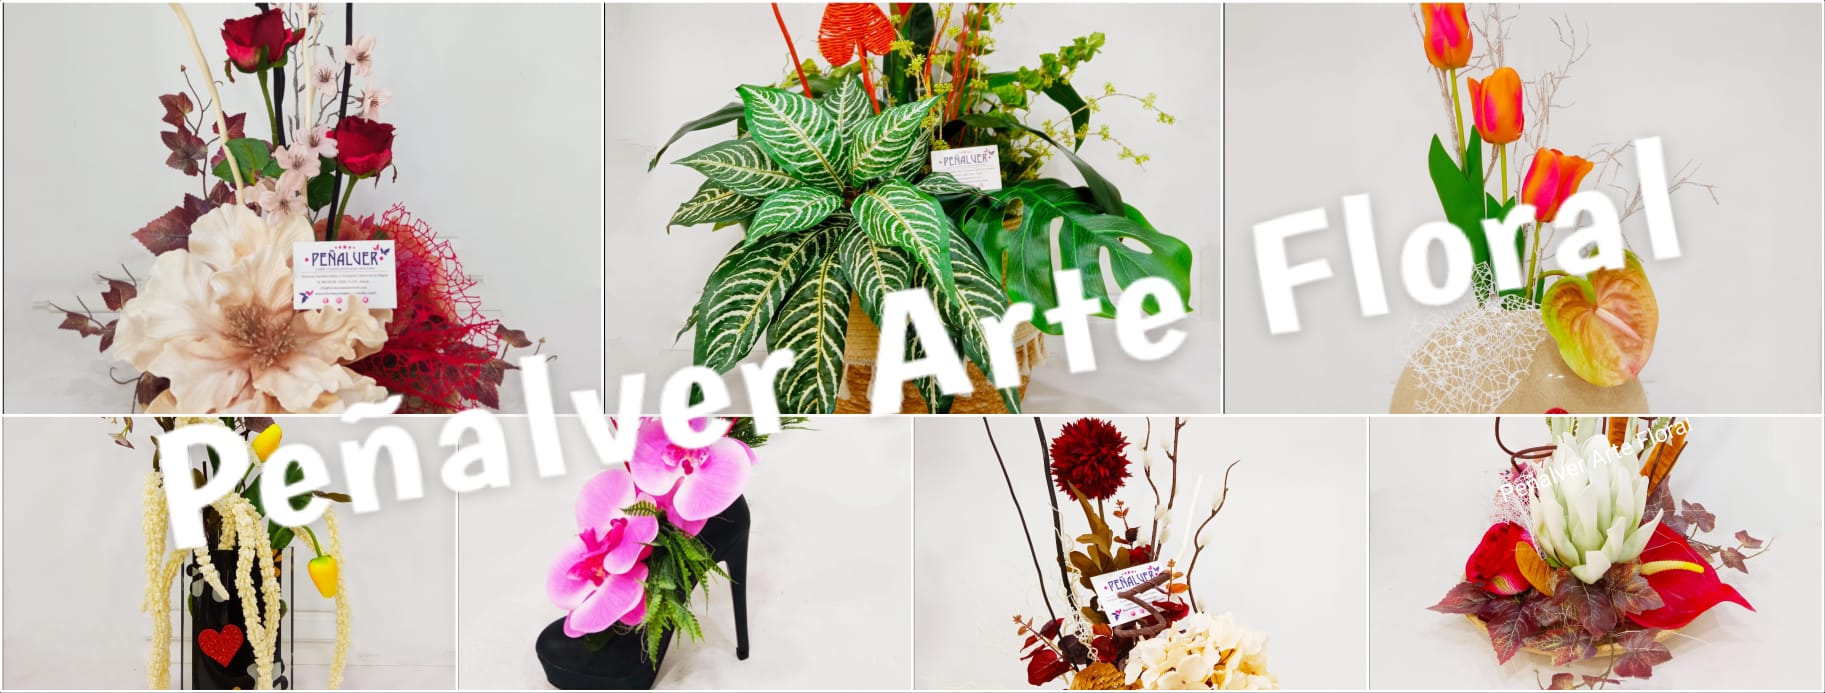 Peñalver Arte Floral. Especialistas en flores y plantas artificiales